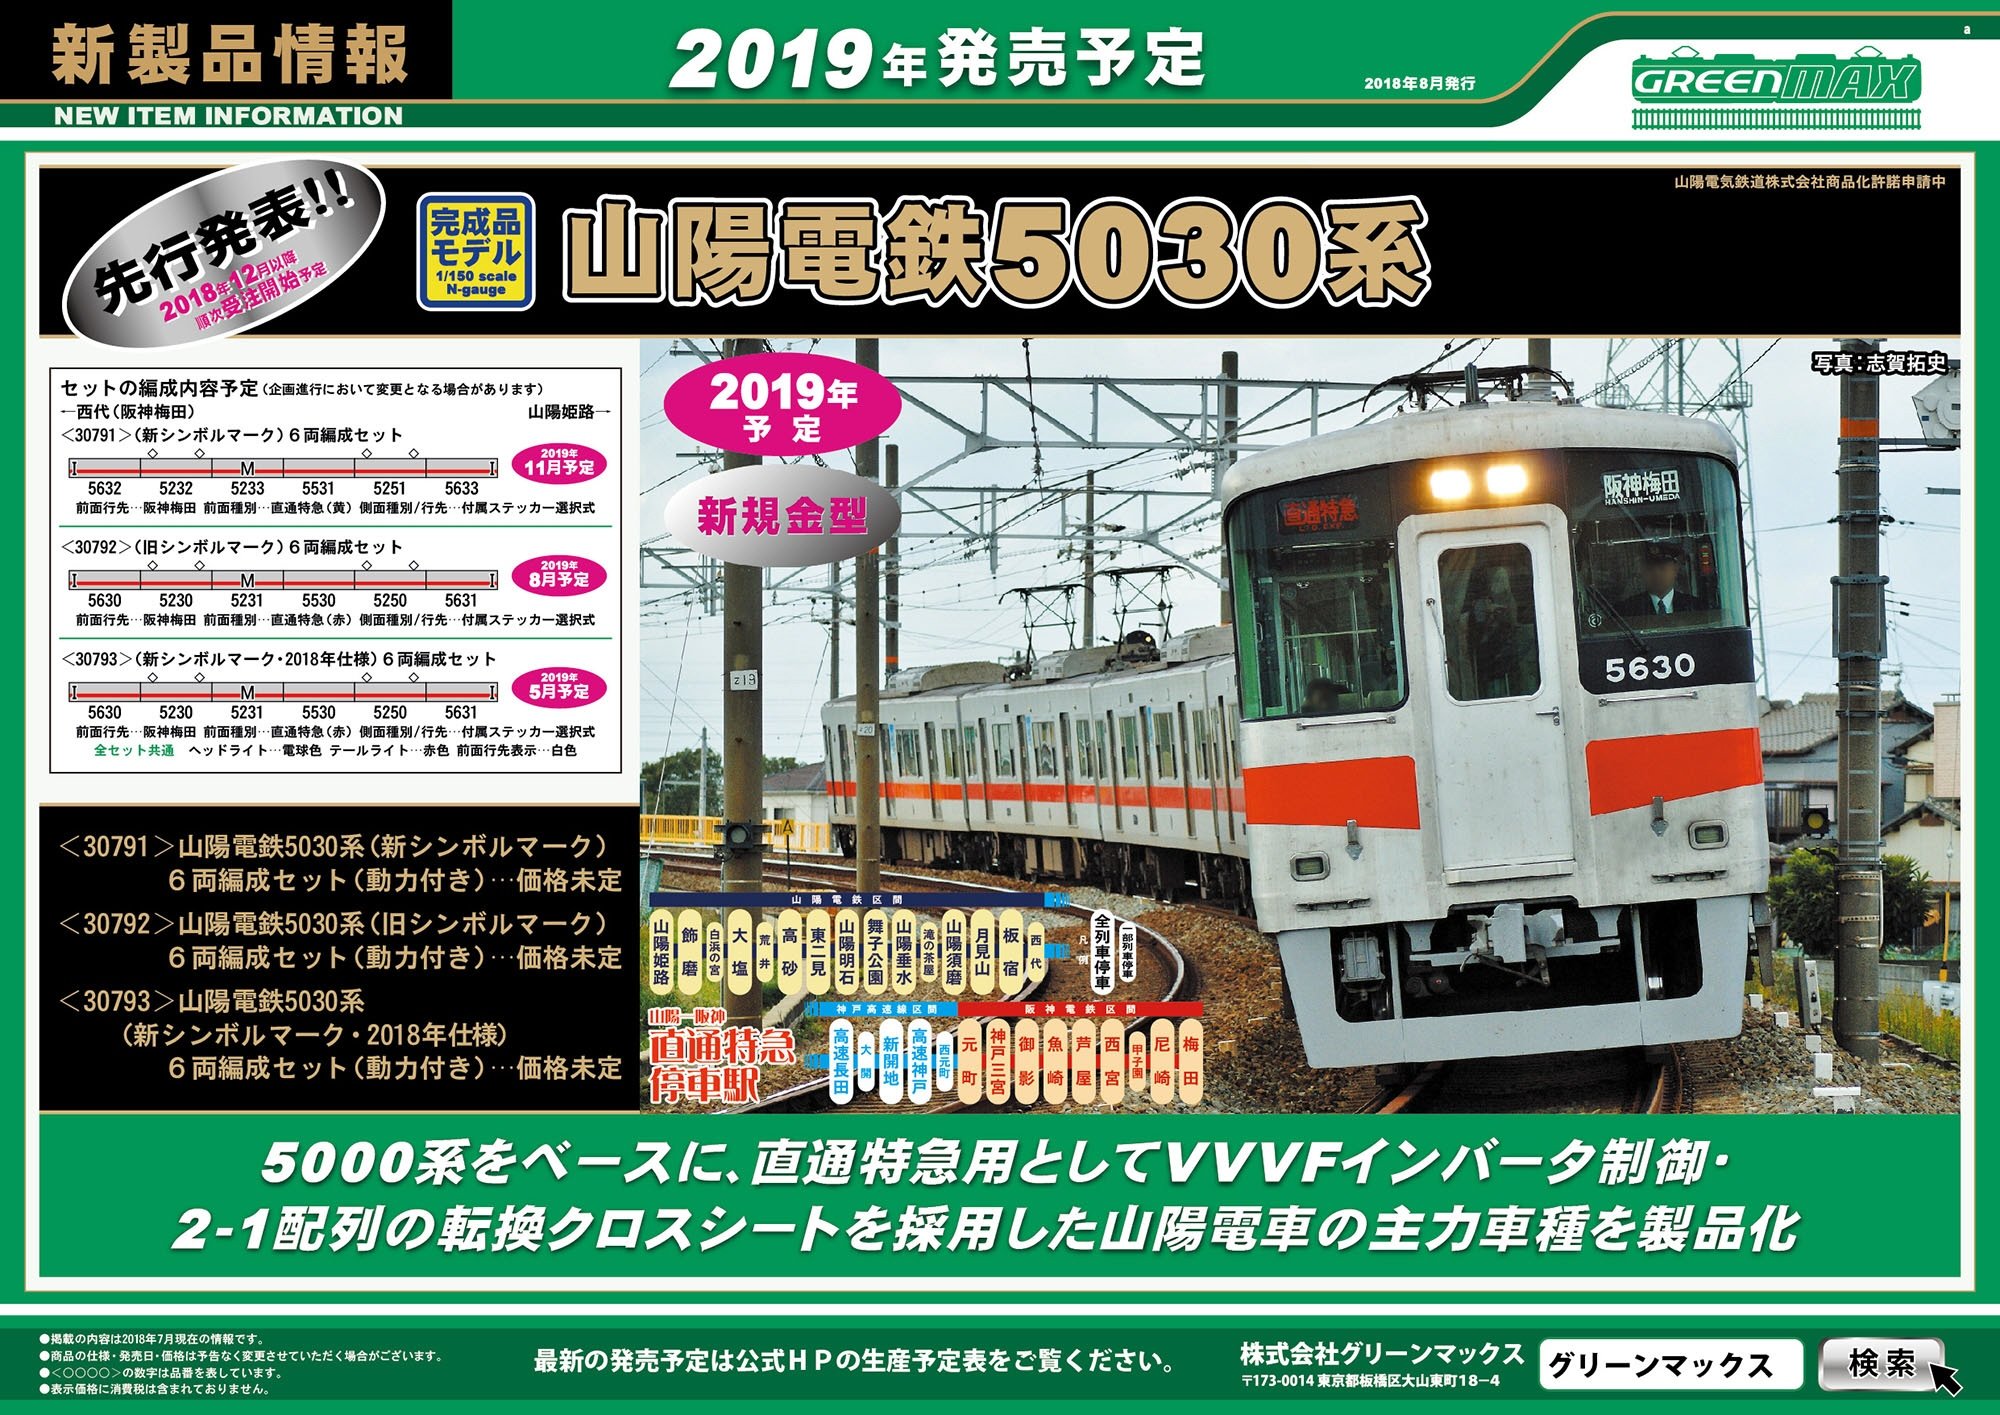 山陽電鉄 5030系 (新シンボルマーク・2018年仕様) 6両編成セット (動力 